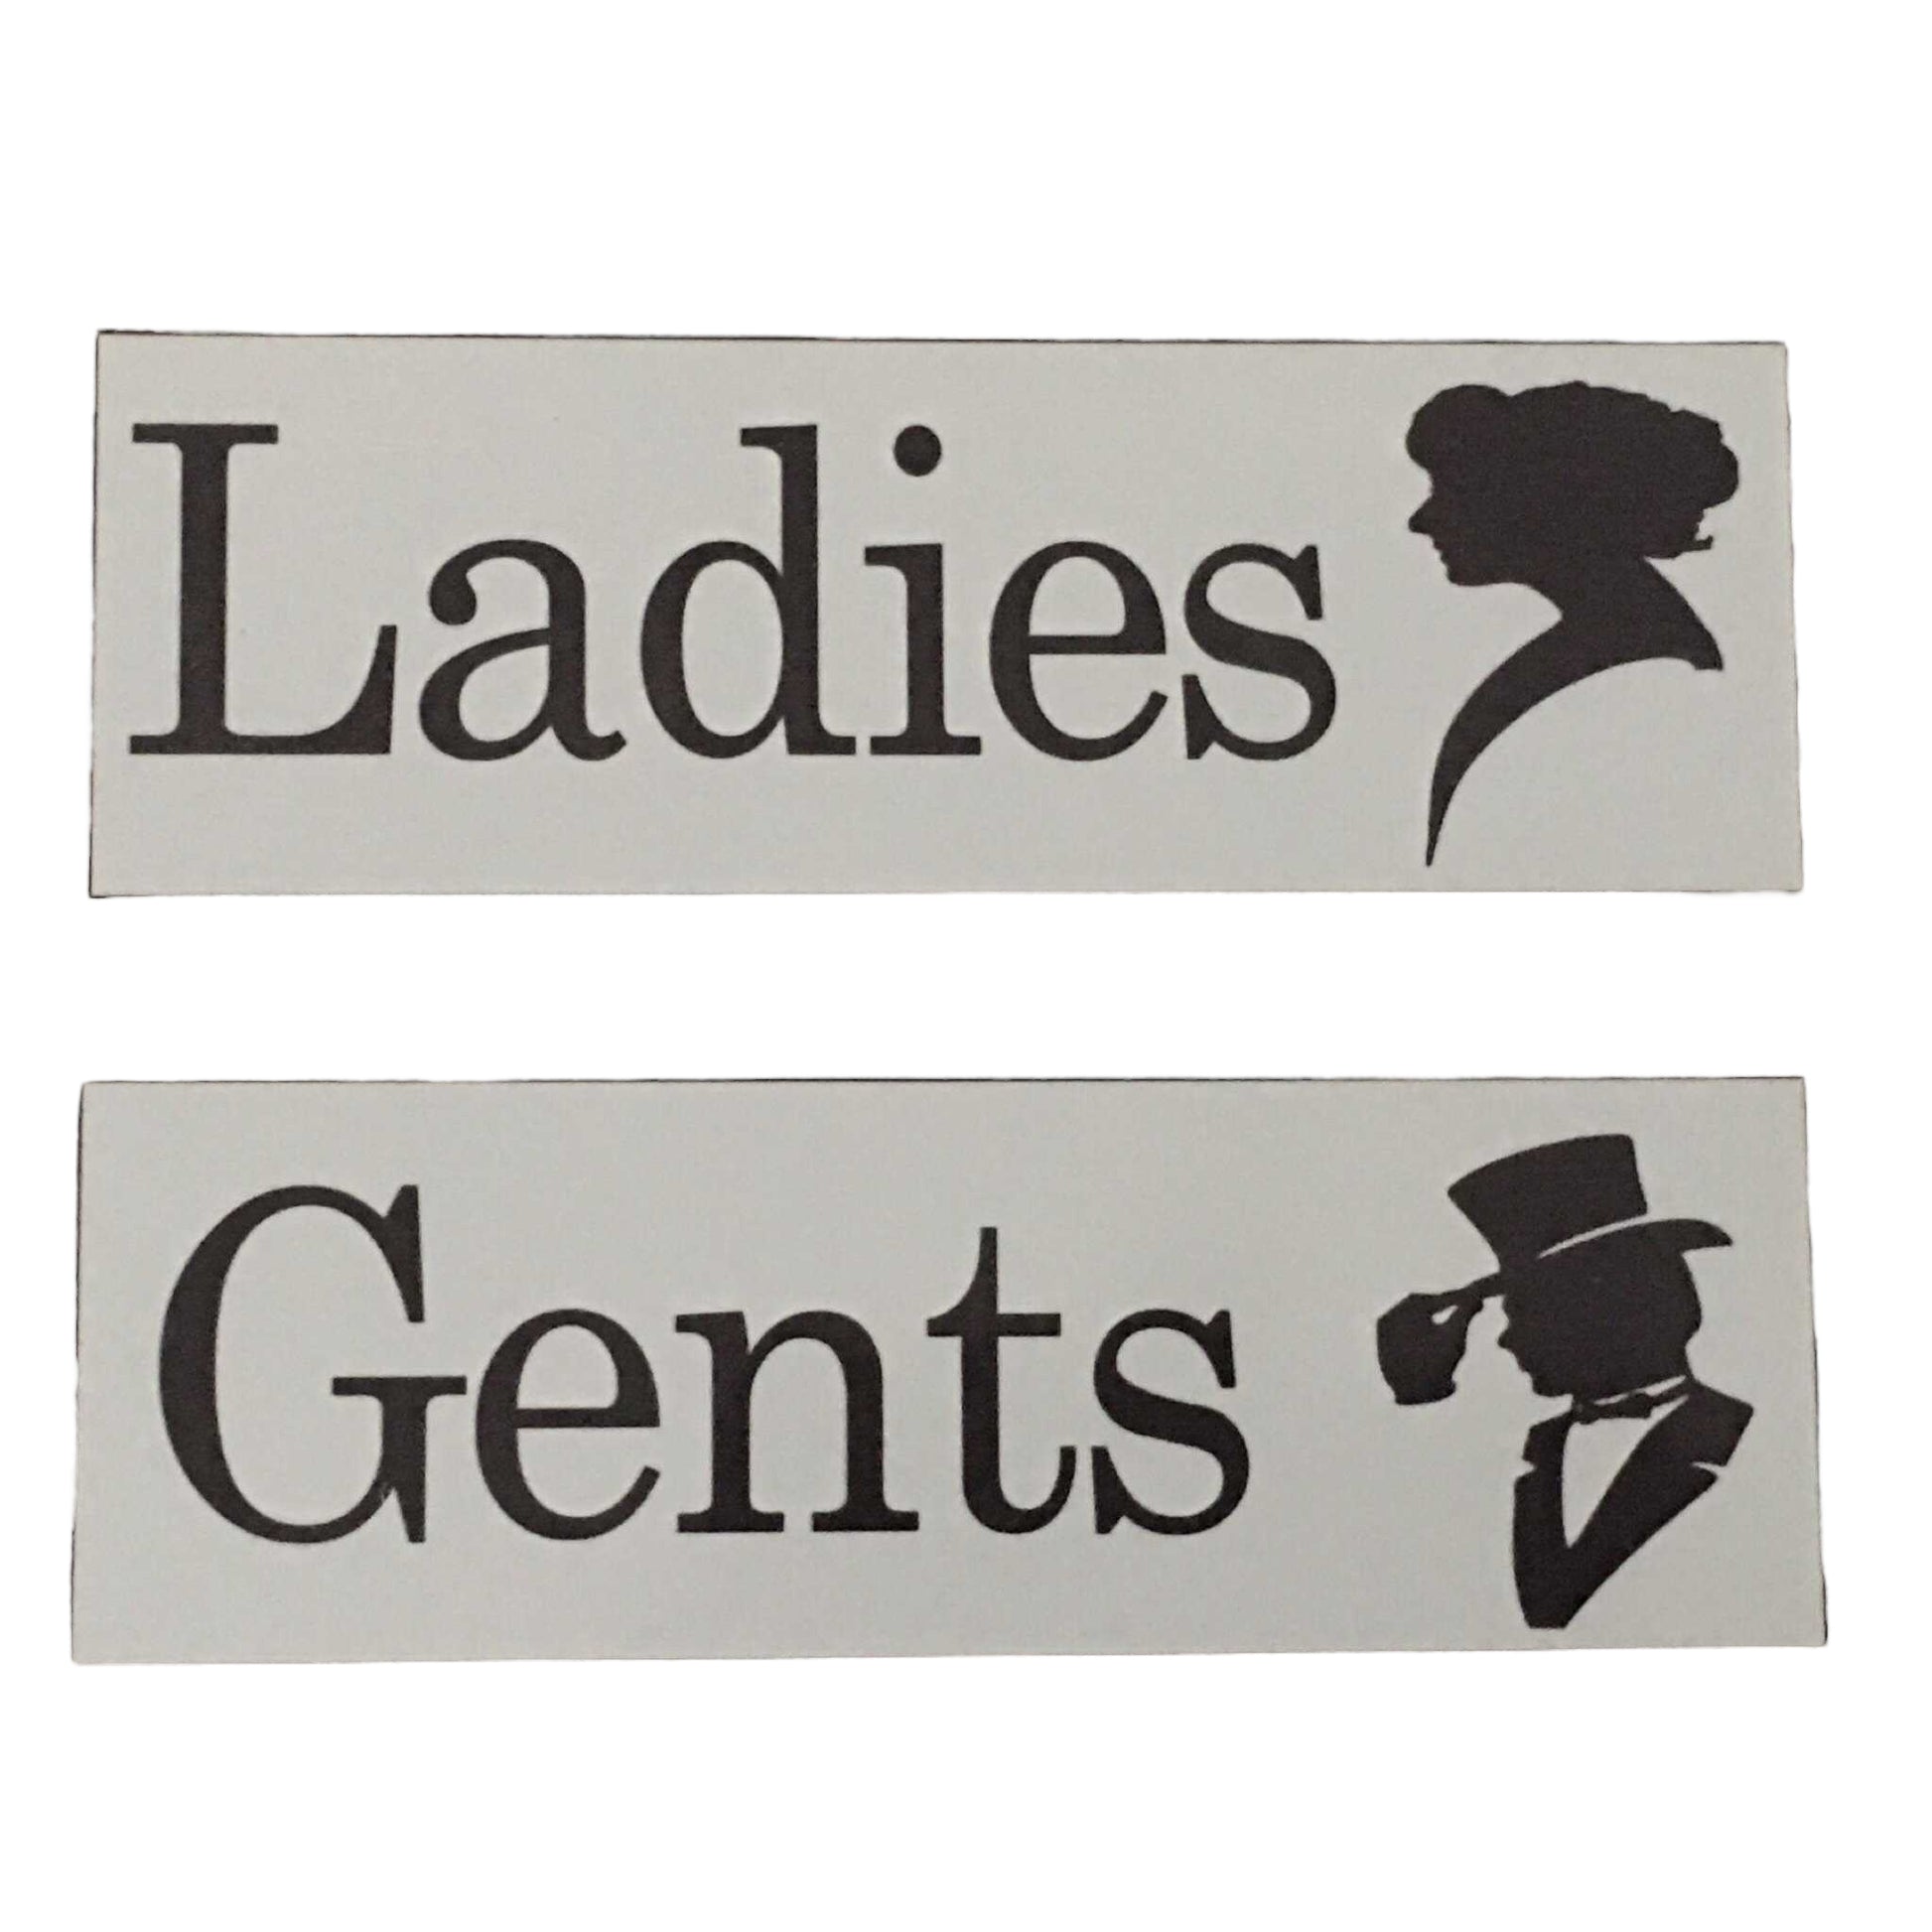 Ladies & Gents Toilet Door Sign - The Renmy Store Homewares & Gifts 